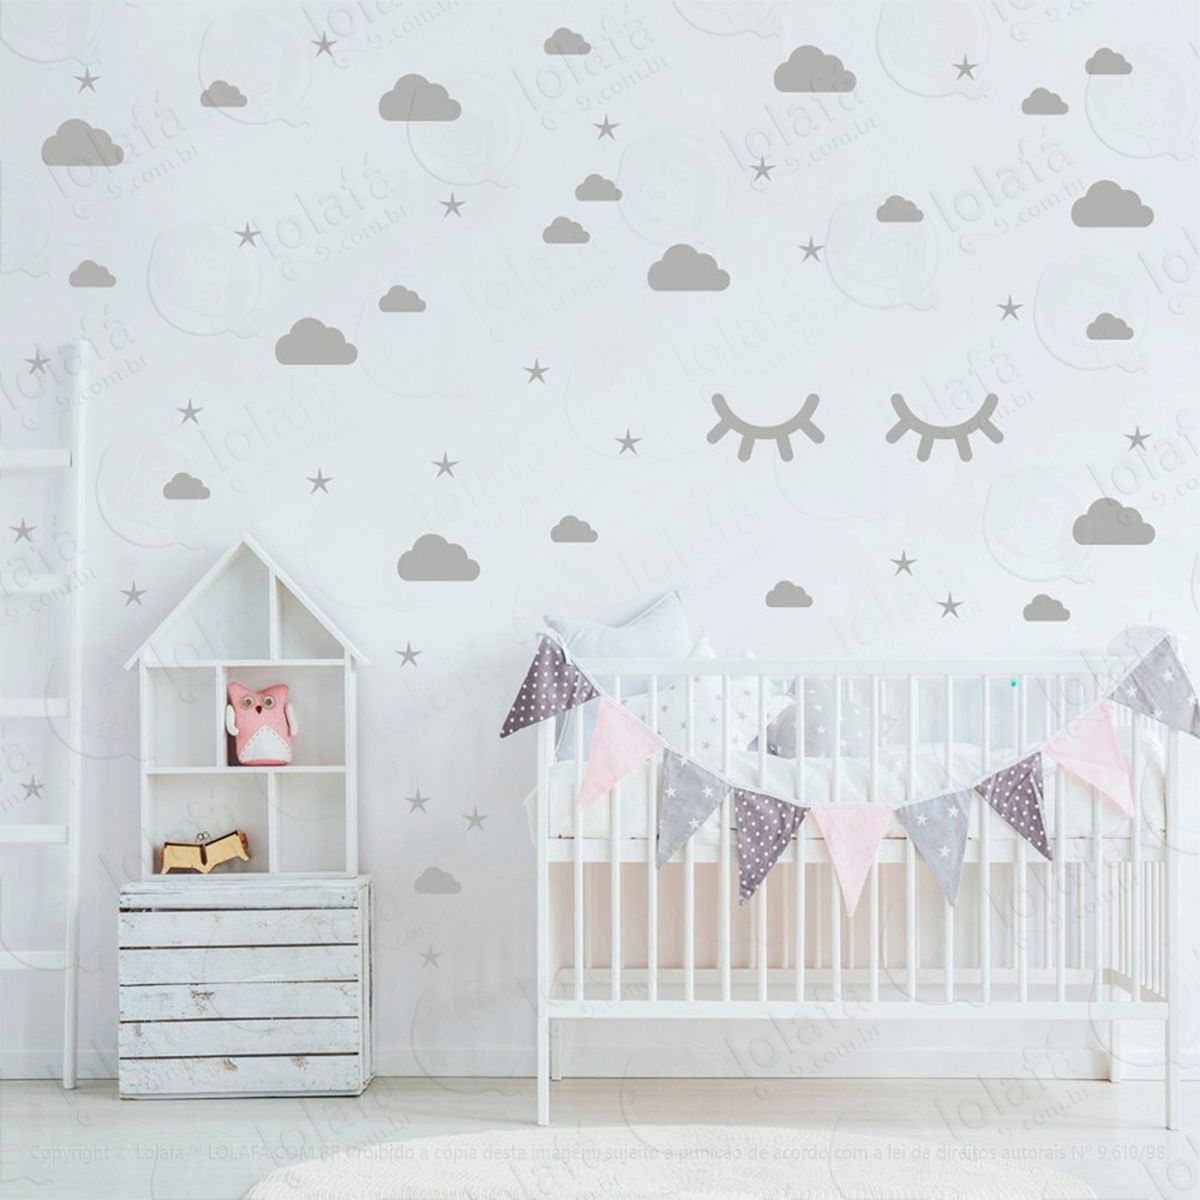 adesivos nuvens cílios e estrelas 76 peças adesivos para quarto de bebê infantil - mod:100